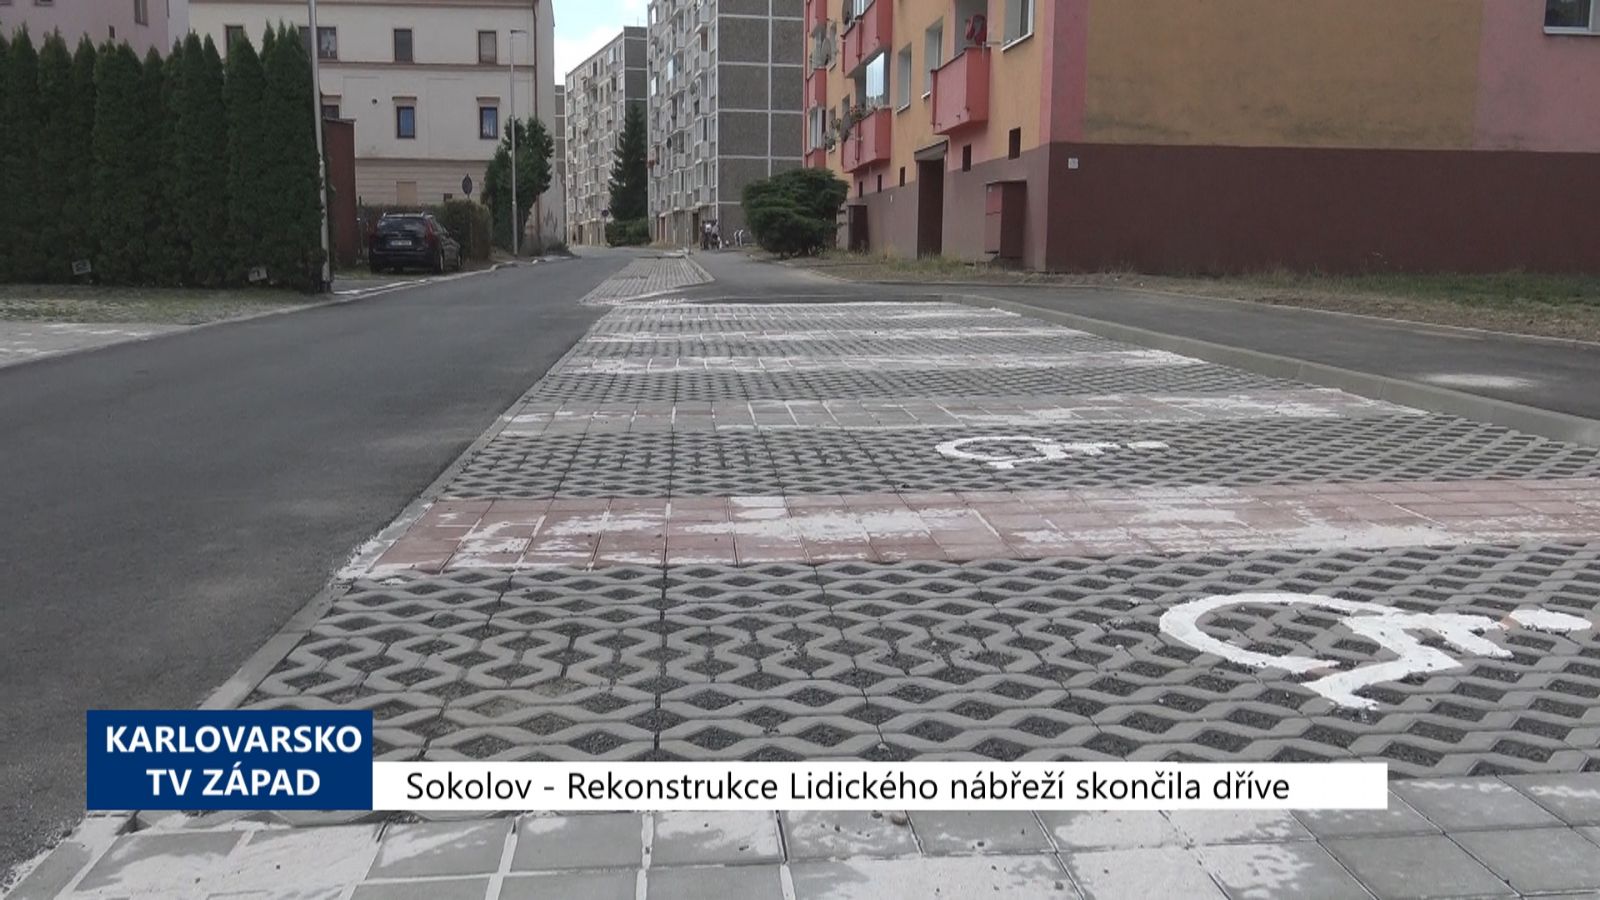 Sokolov: Rekonstrukce Lidického nábřeží skončila dříve (TV Západ)